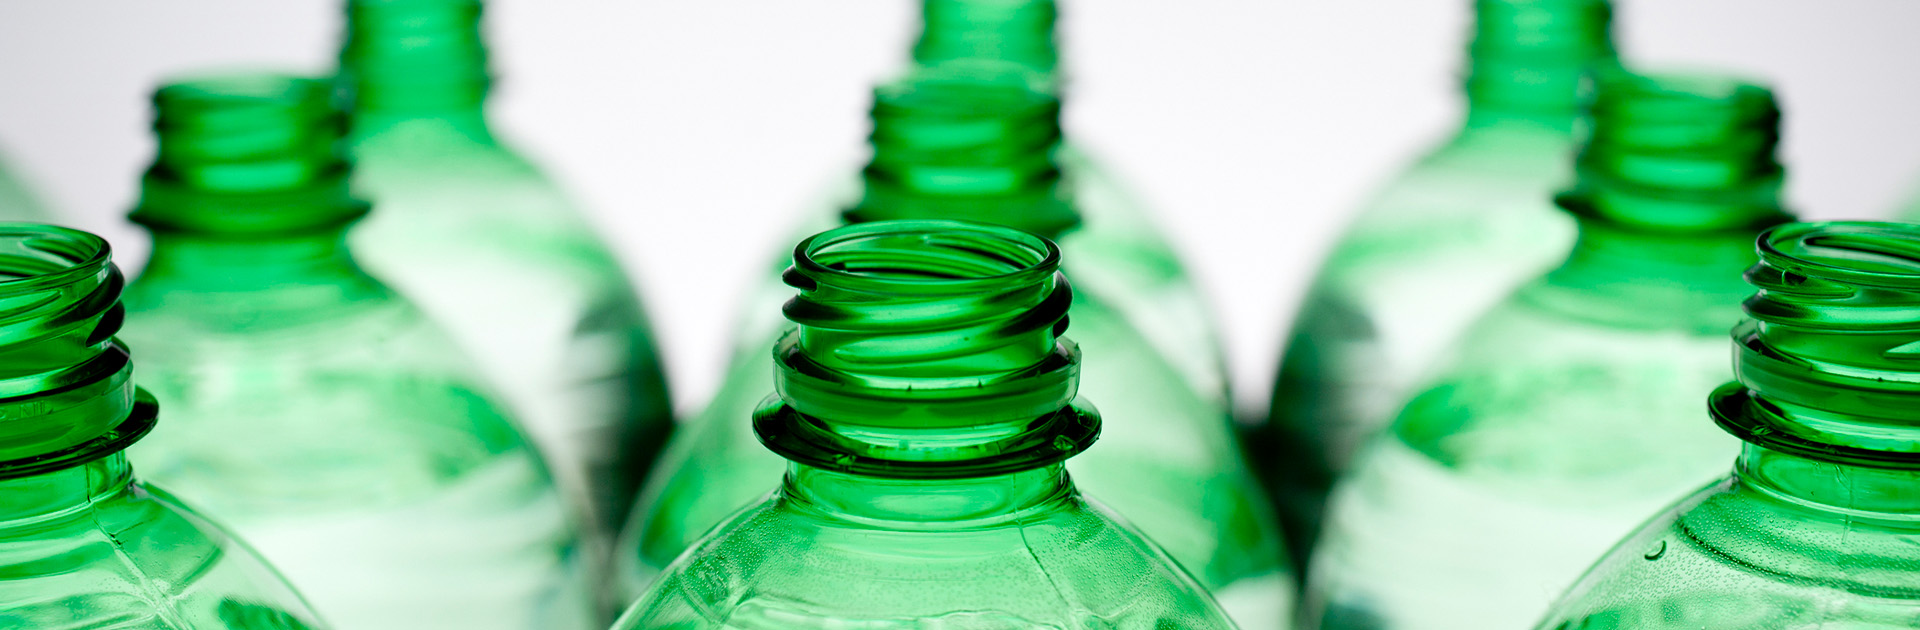 green plastic bottles